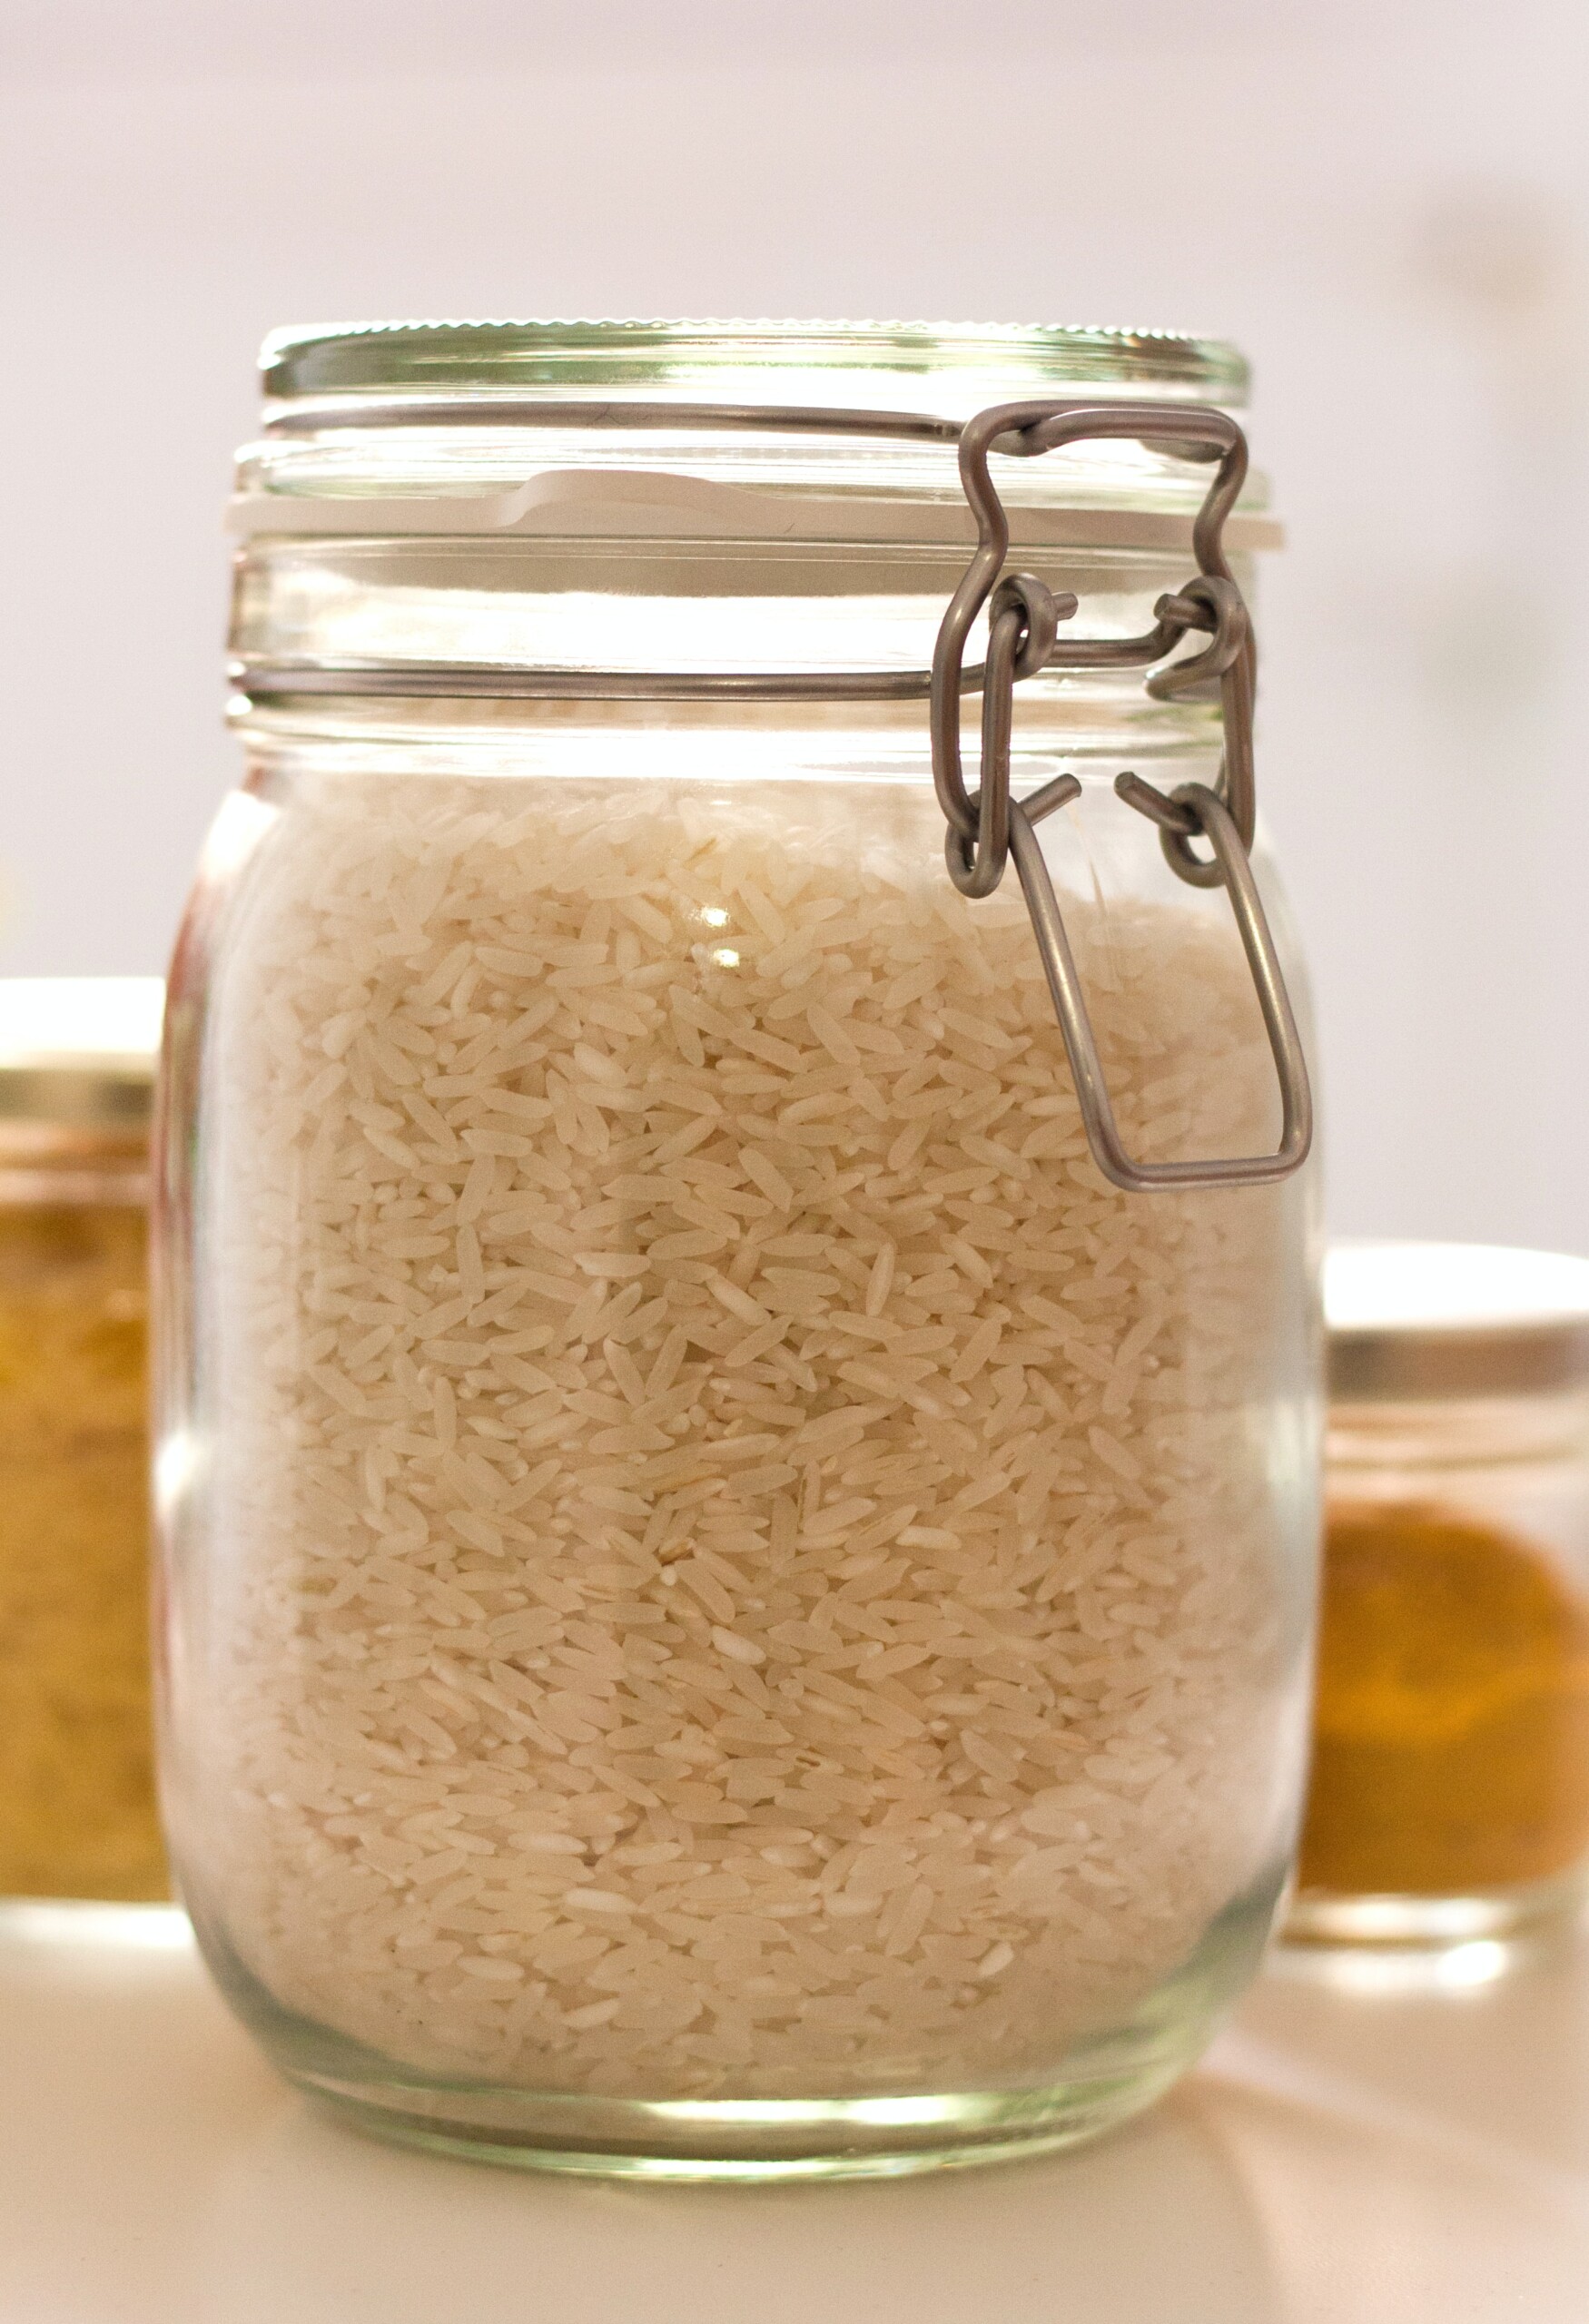 White rice in a mason jar.